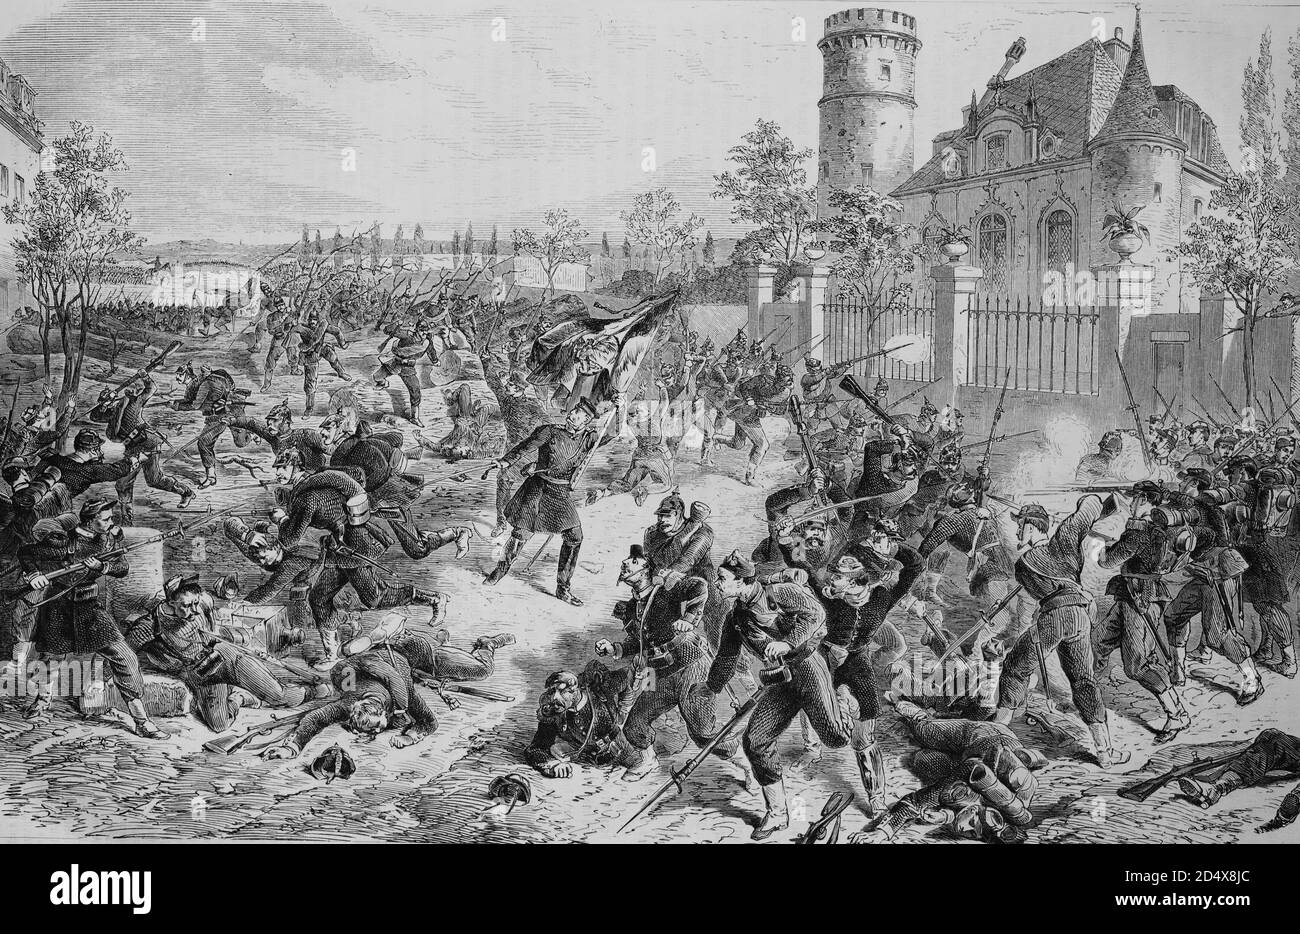 General Budritzki und das 2. Bataillon der Grenadiere Wachregiment am Eingang zu Bourget, illustrierte Kriegsgeschichte, deutsch-französischer Krieg 1870-1871 Stockfoto